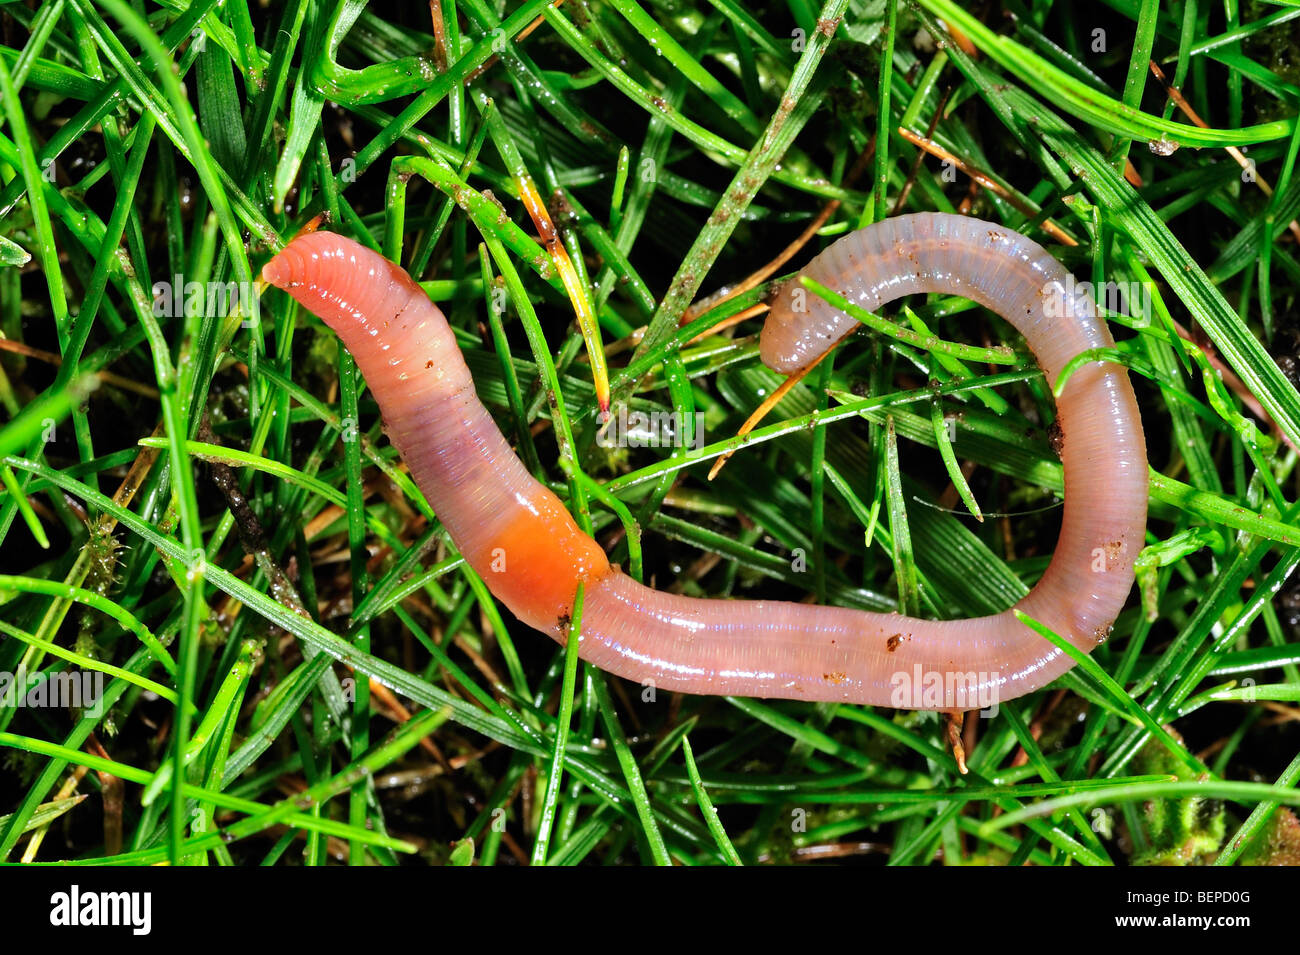 Rosy-tipped worm (Aporrectodea rosea) on the grass in garden Stock Photo